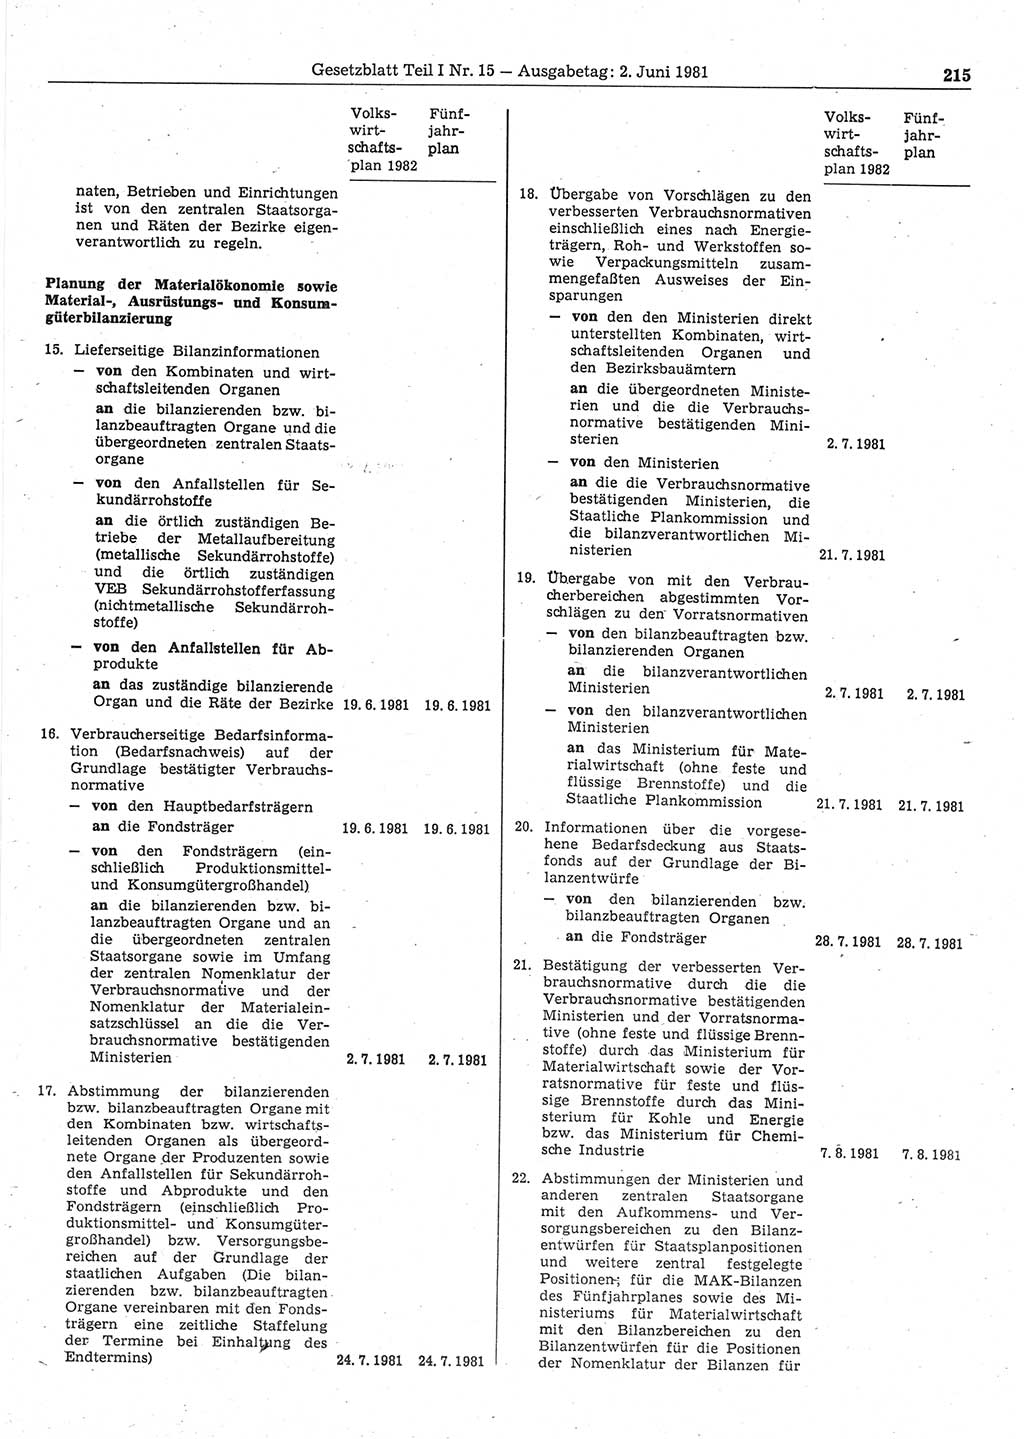 Gesetzblatt (GBl.) der Deutschen Demokratischen Republik (DDR) Teil Ⅰ 1981, Seite 215 (GBl. DDR Ⅰ 1981, S. 215)